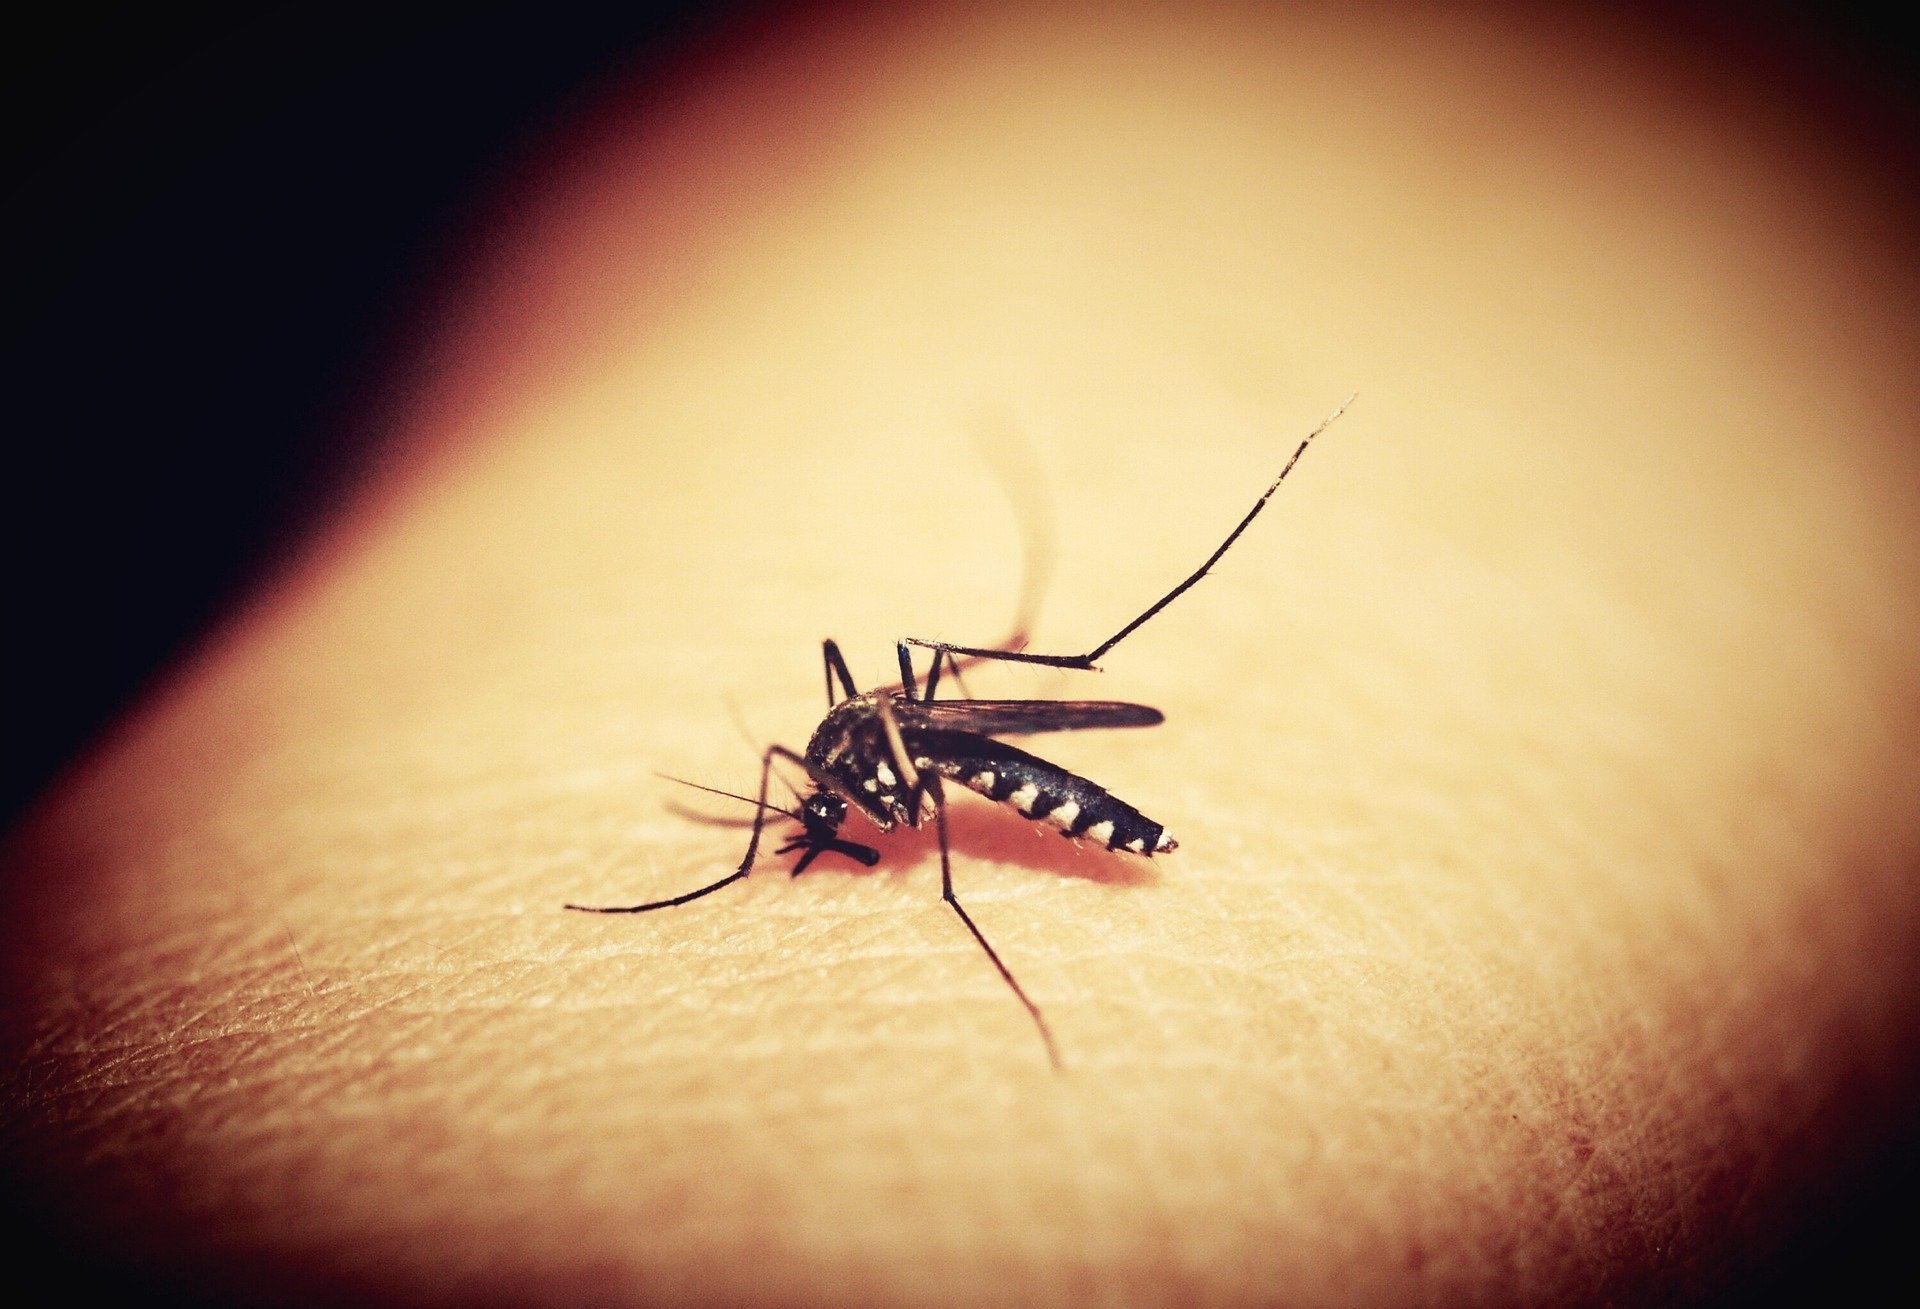 Cascavel chega a 1.142 casos confirmados de dengue